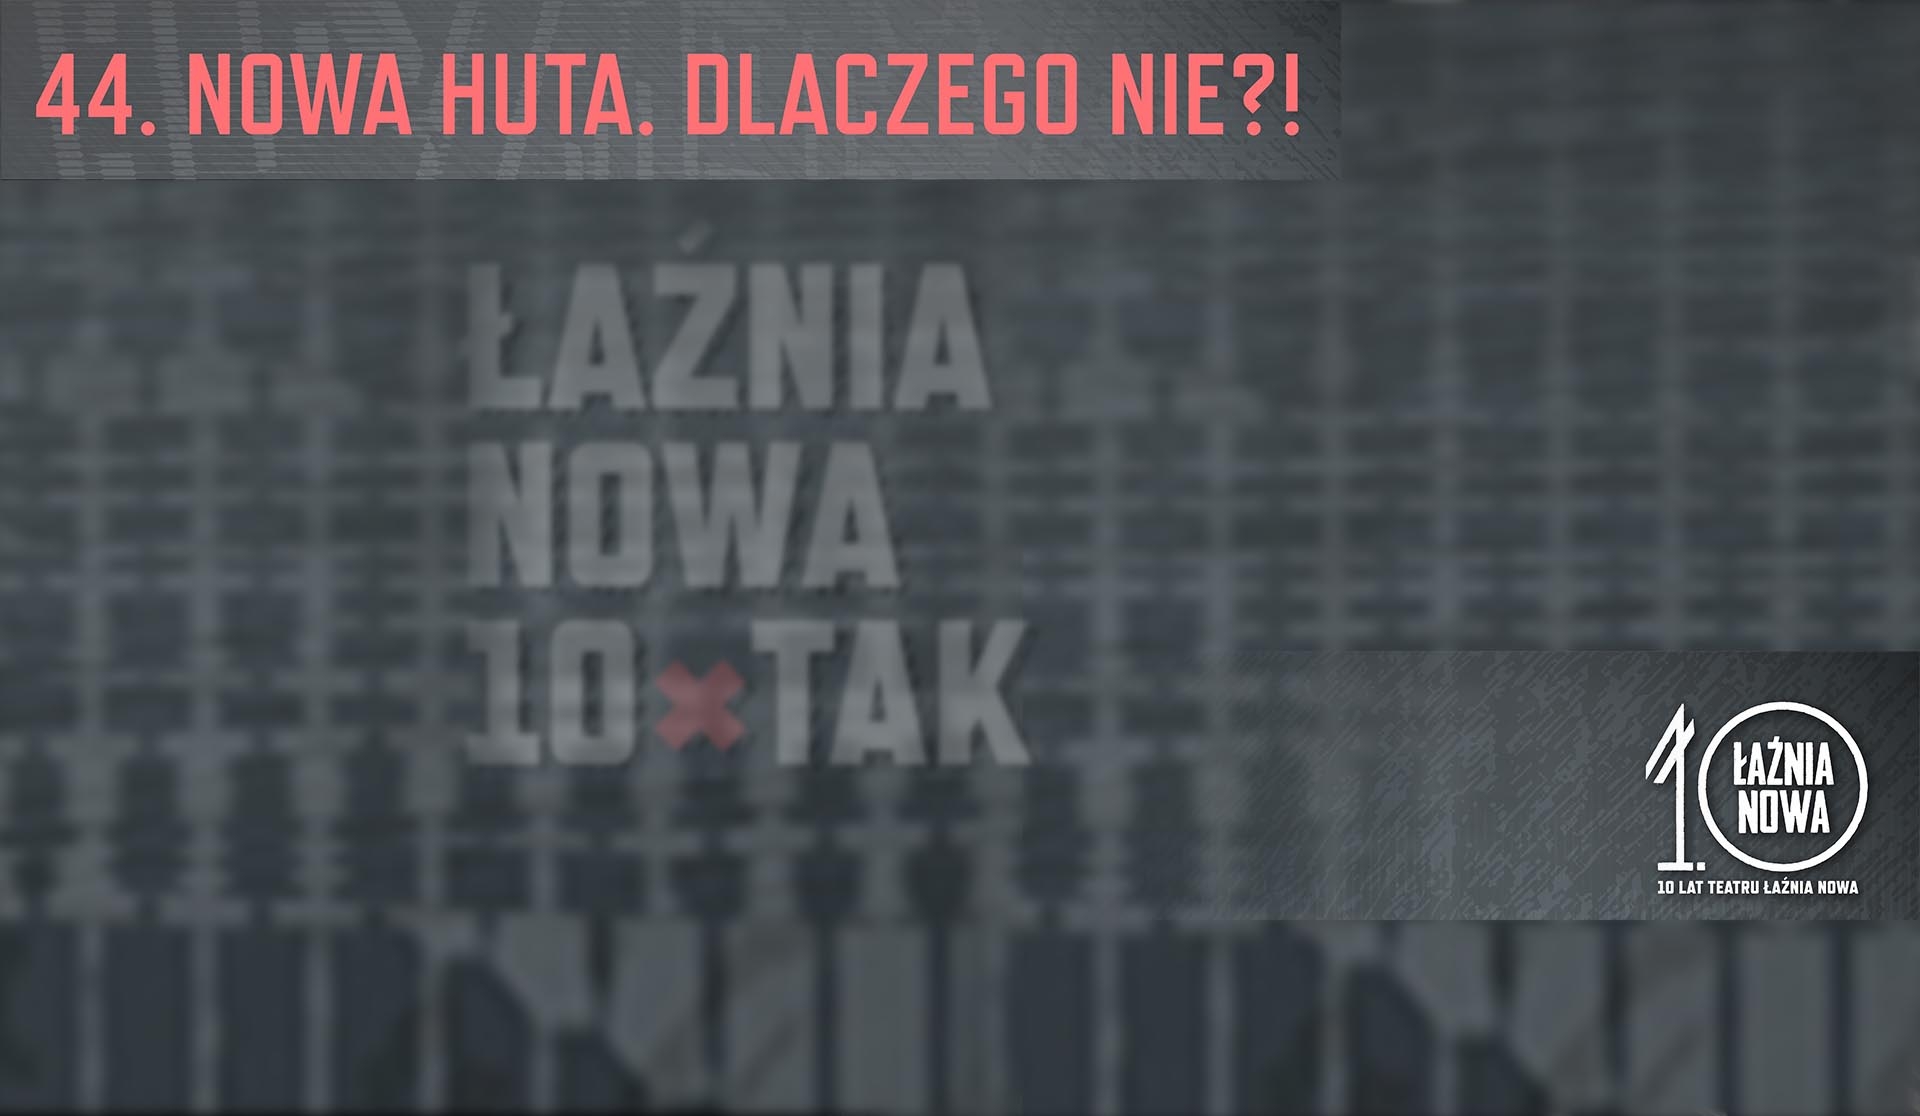 06.09.2015 – Łaźnia Nowa – 10 x TAK. Koncert muzyki teatralnej